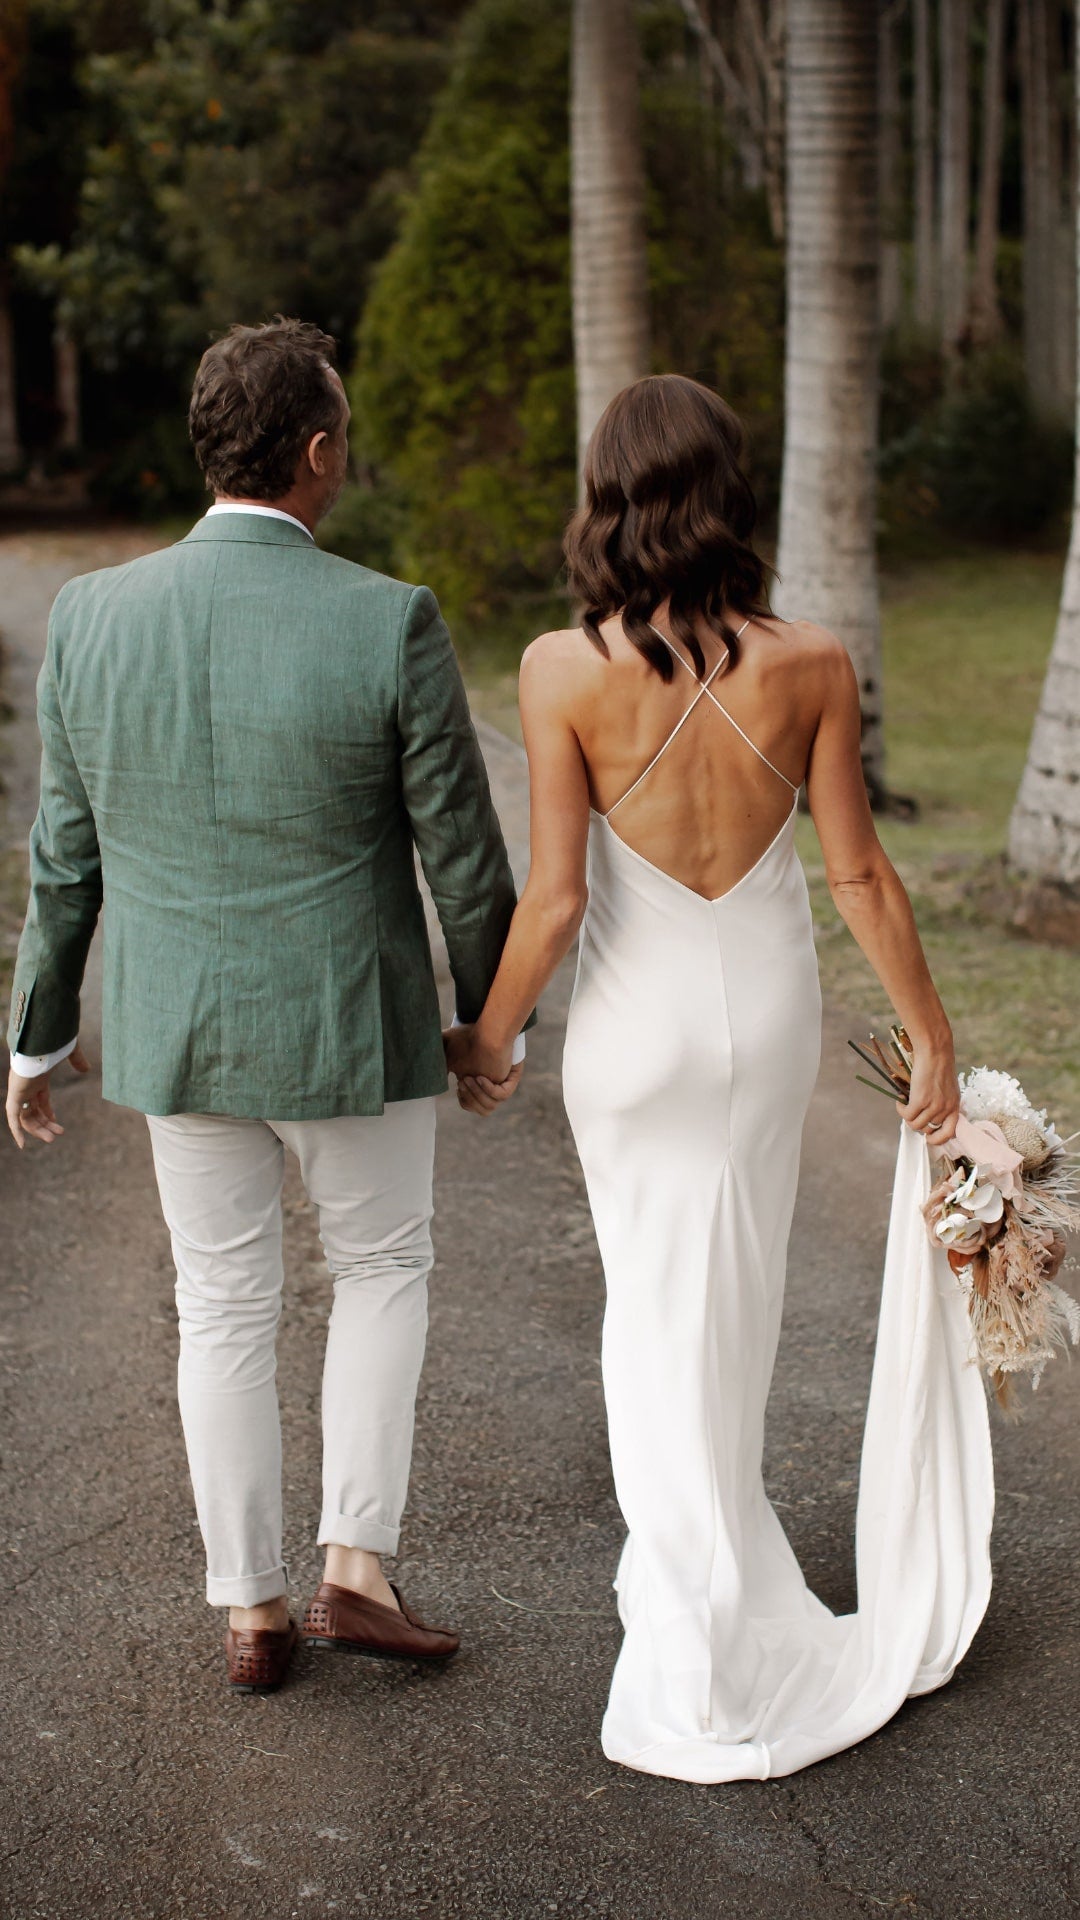 Aaron & Alana's Wedding | Men's Wedding Suits Melbourne